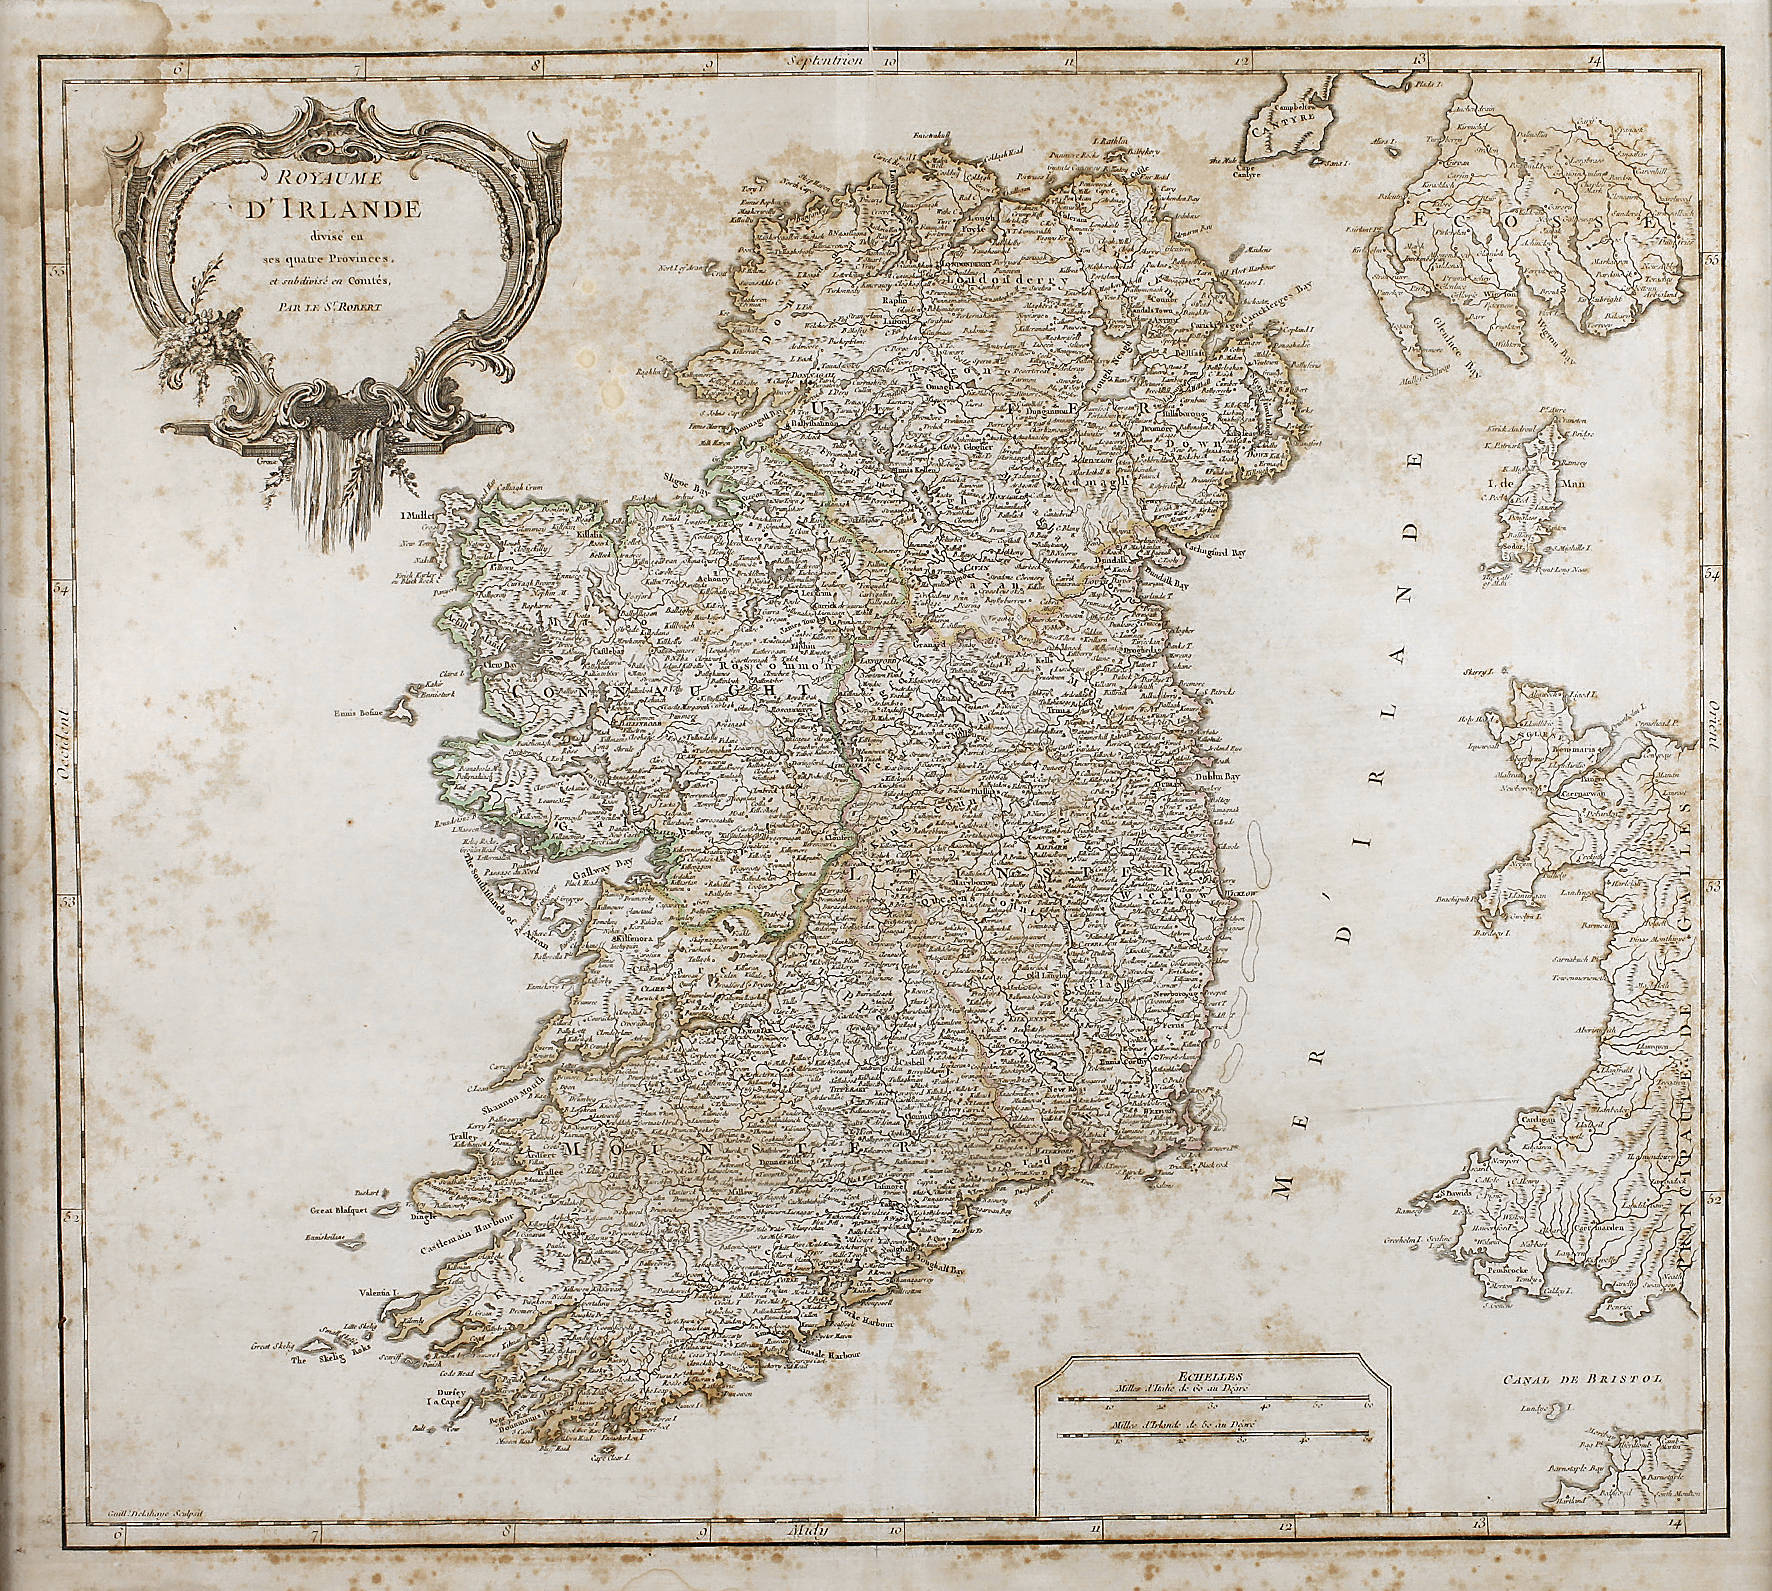 Didier Robert de Vaugondy, Karte Irland